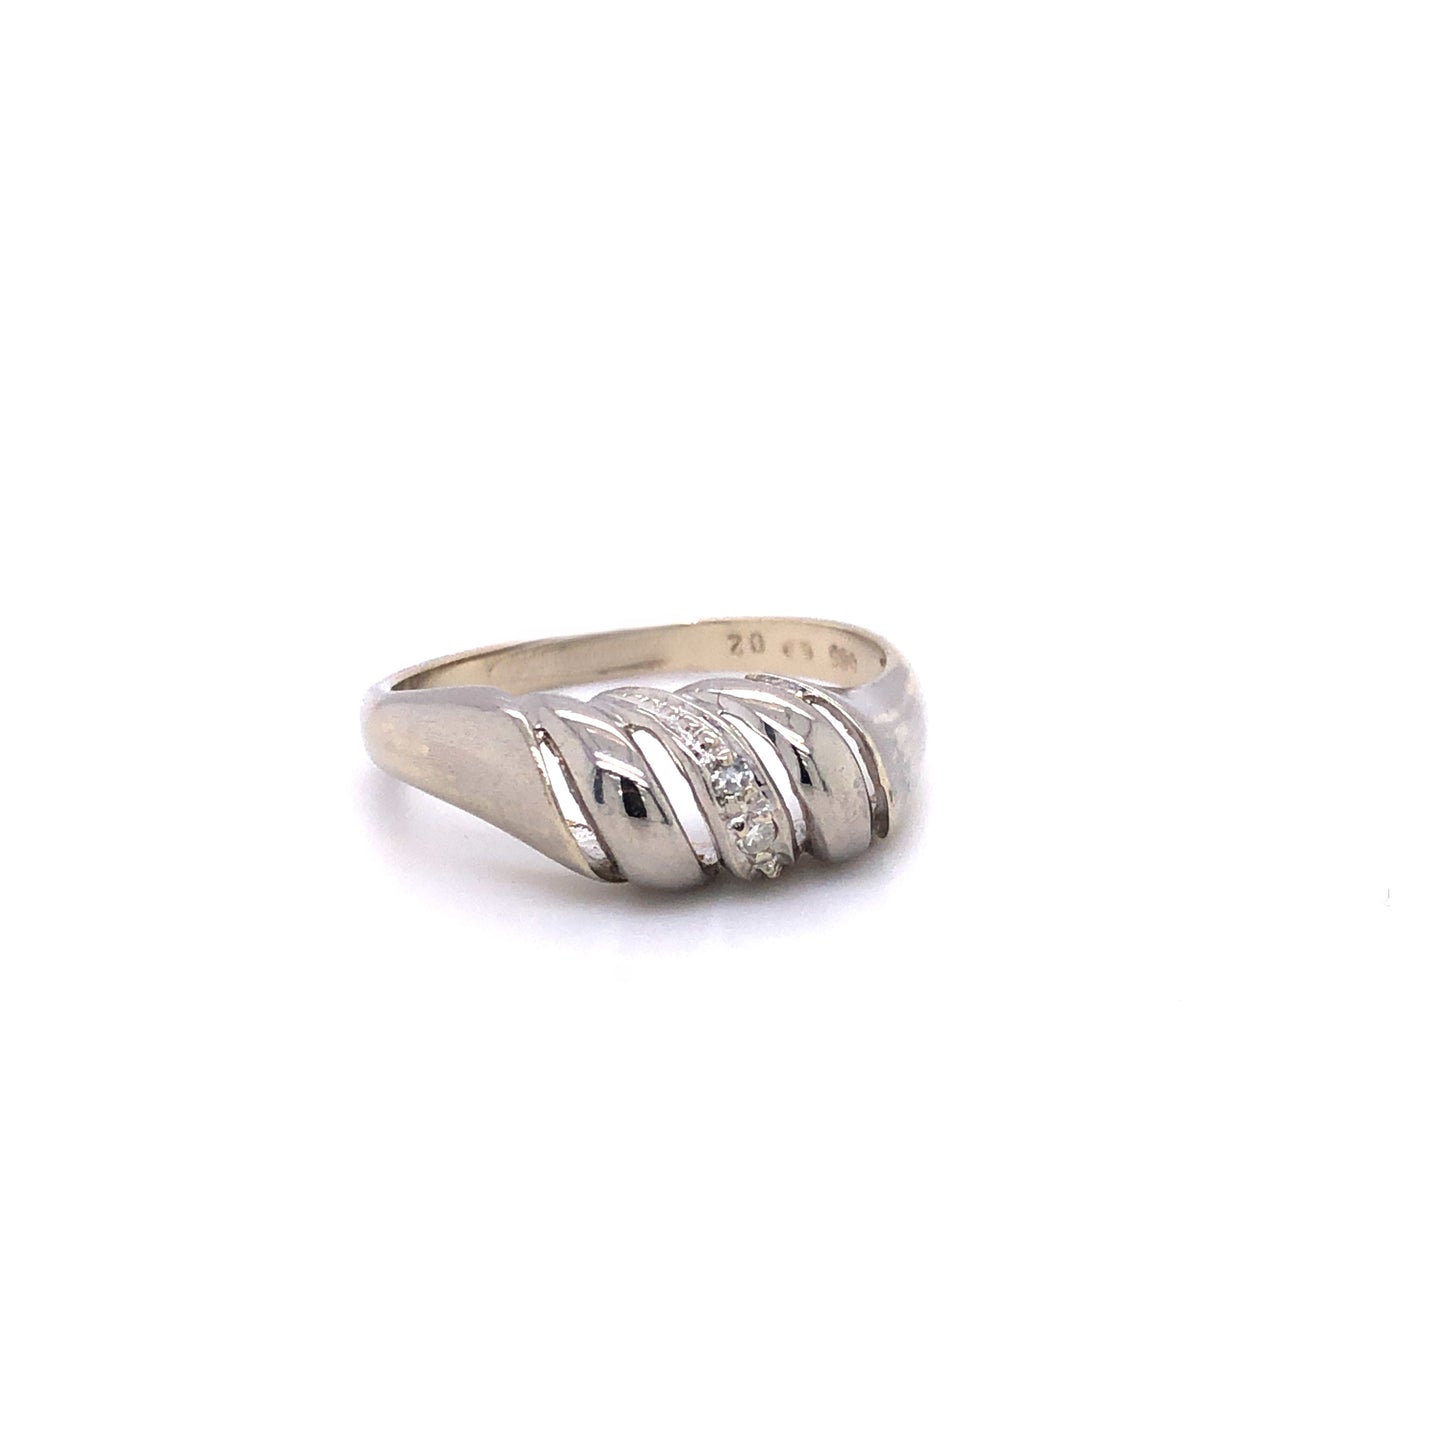 Ring Weißgold 585 / 14k Gr.55 , mit Diamanten besetzt